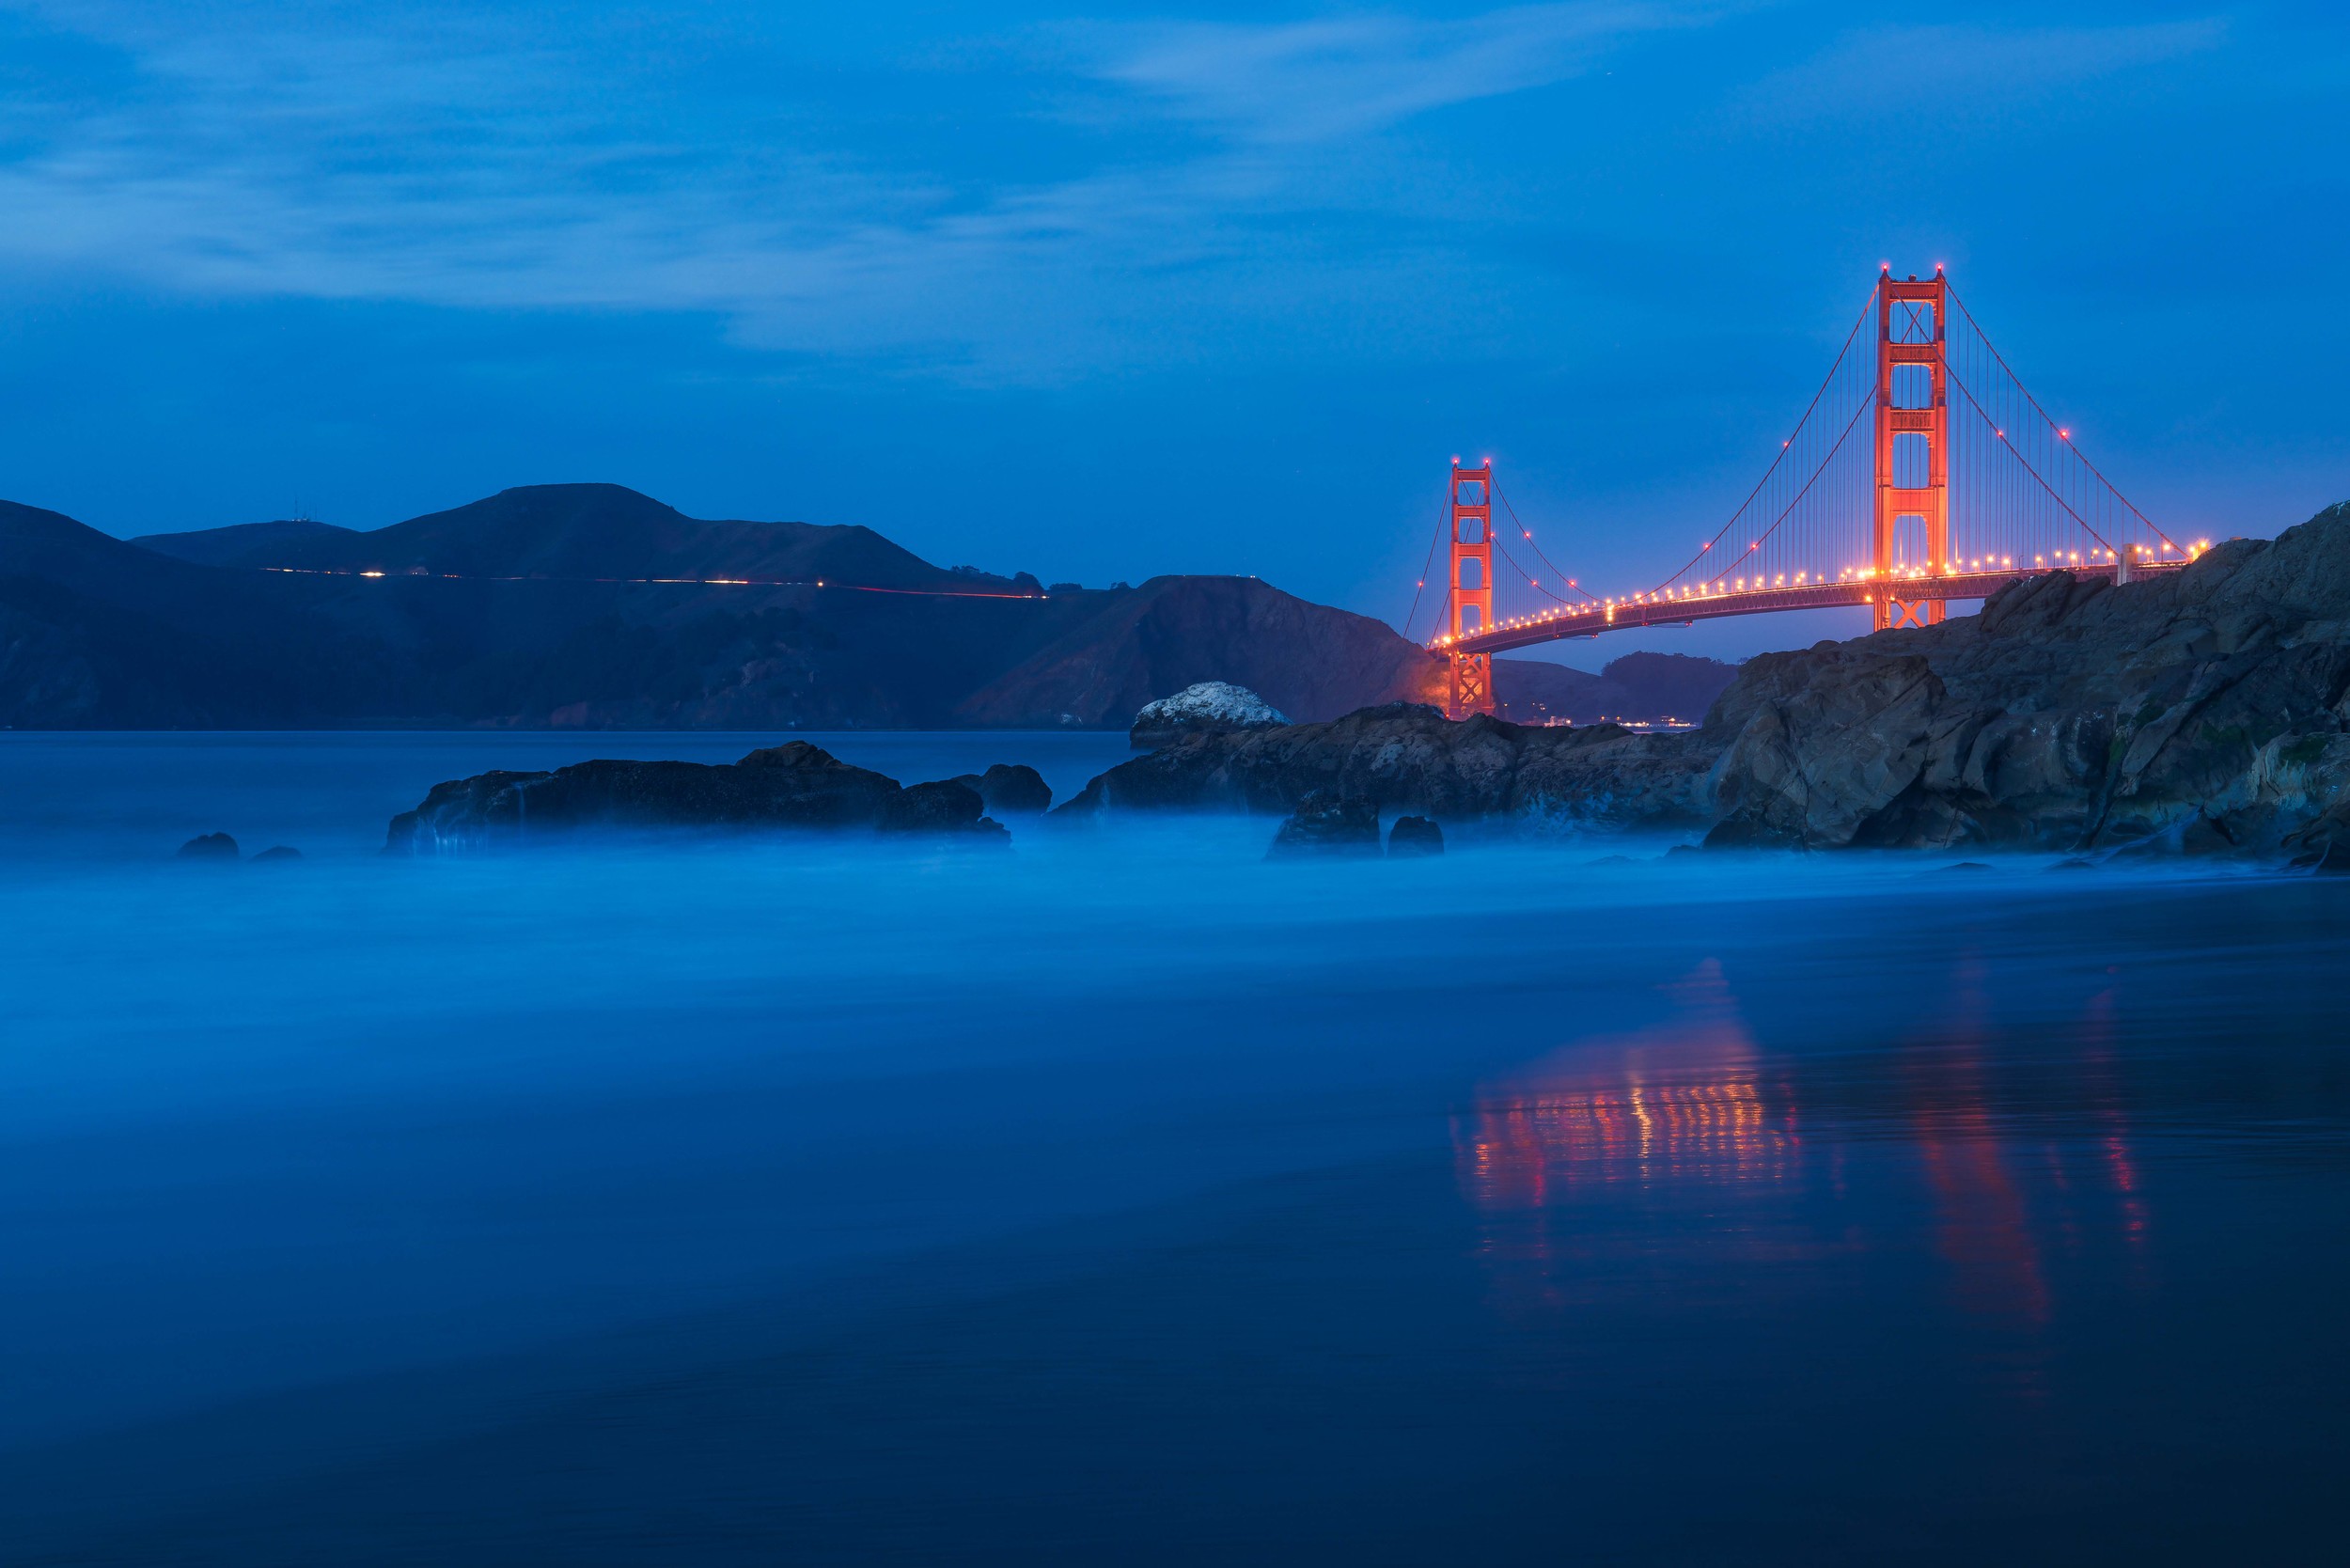 Golden Gate Bridge | San Francisco, California